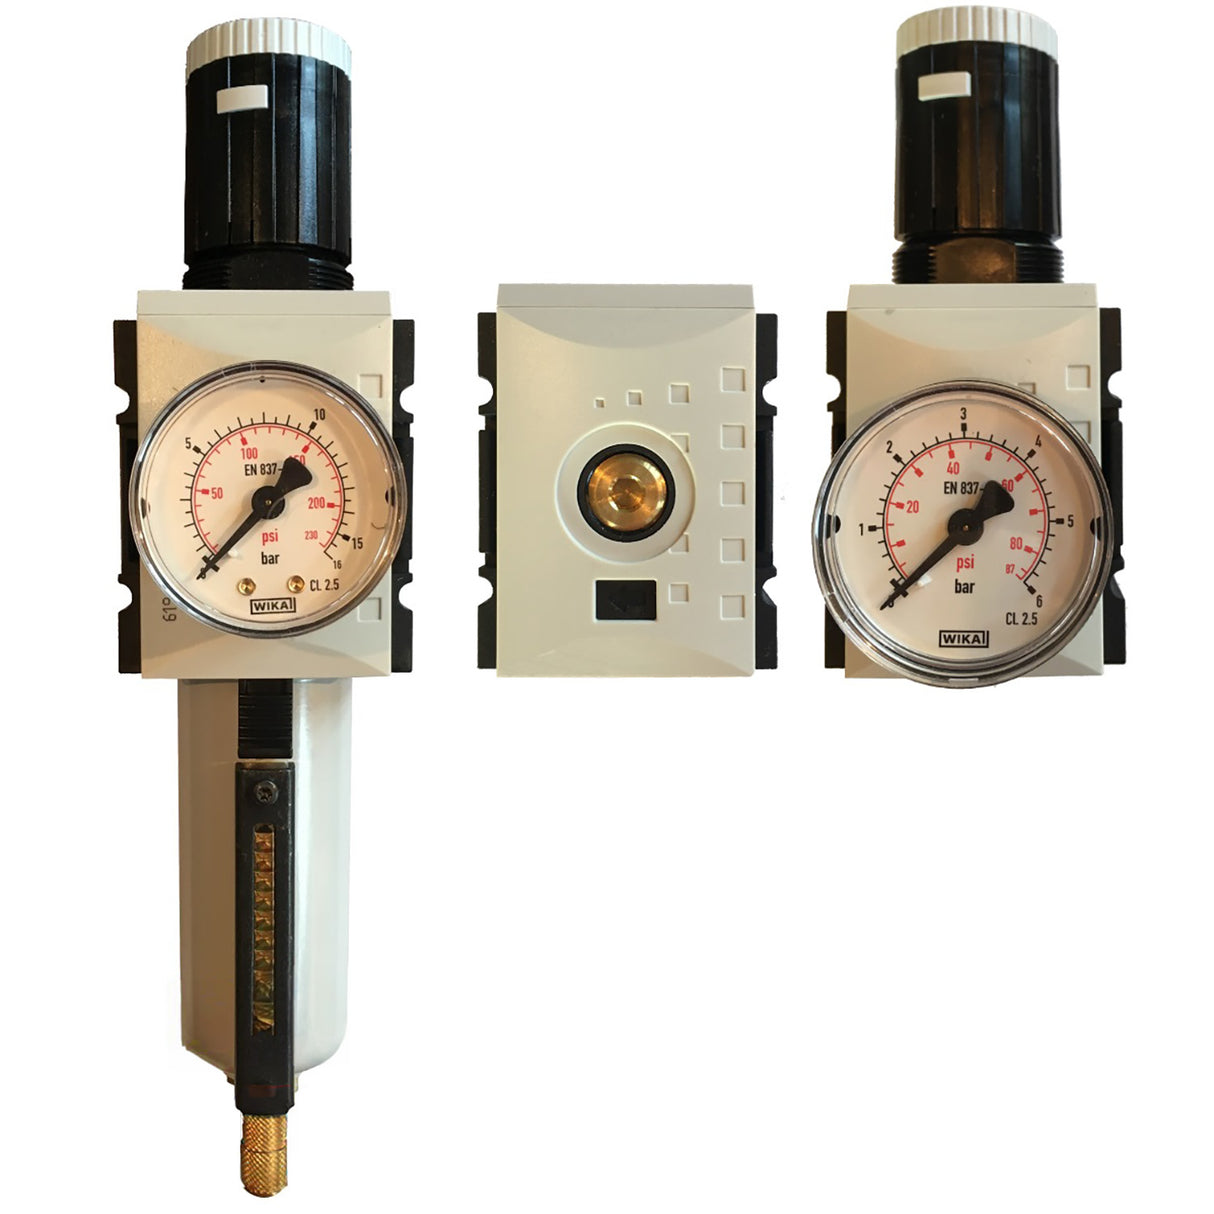 Pressure reducing valve complete